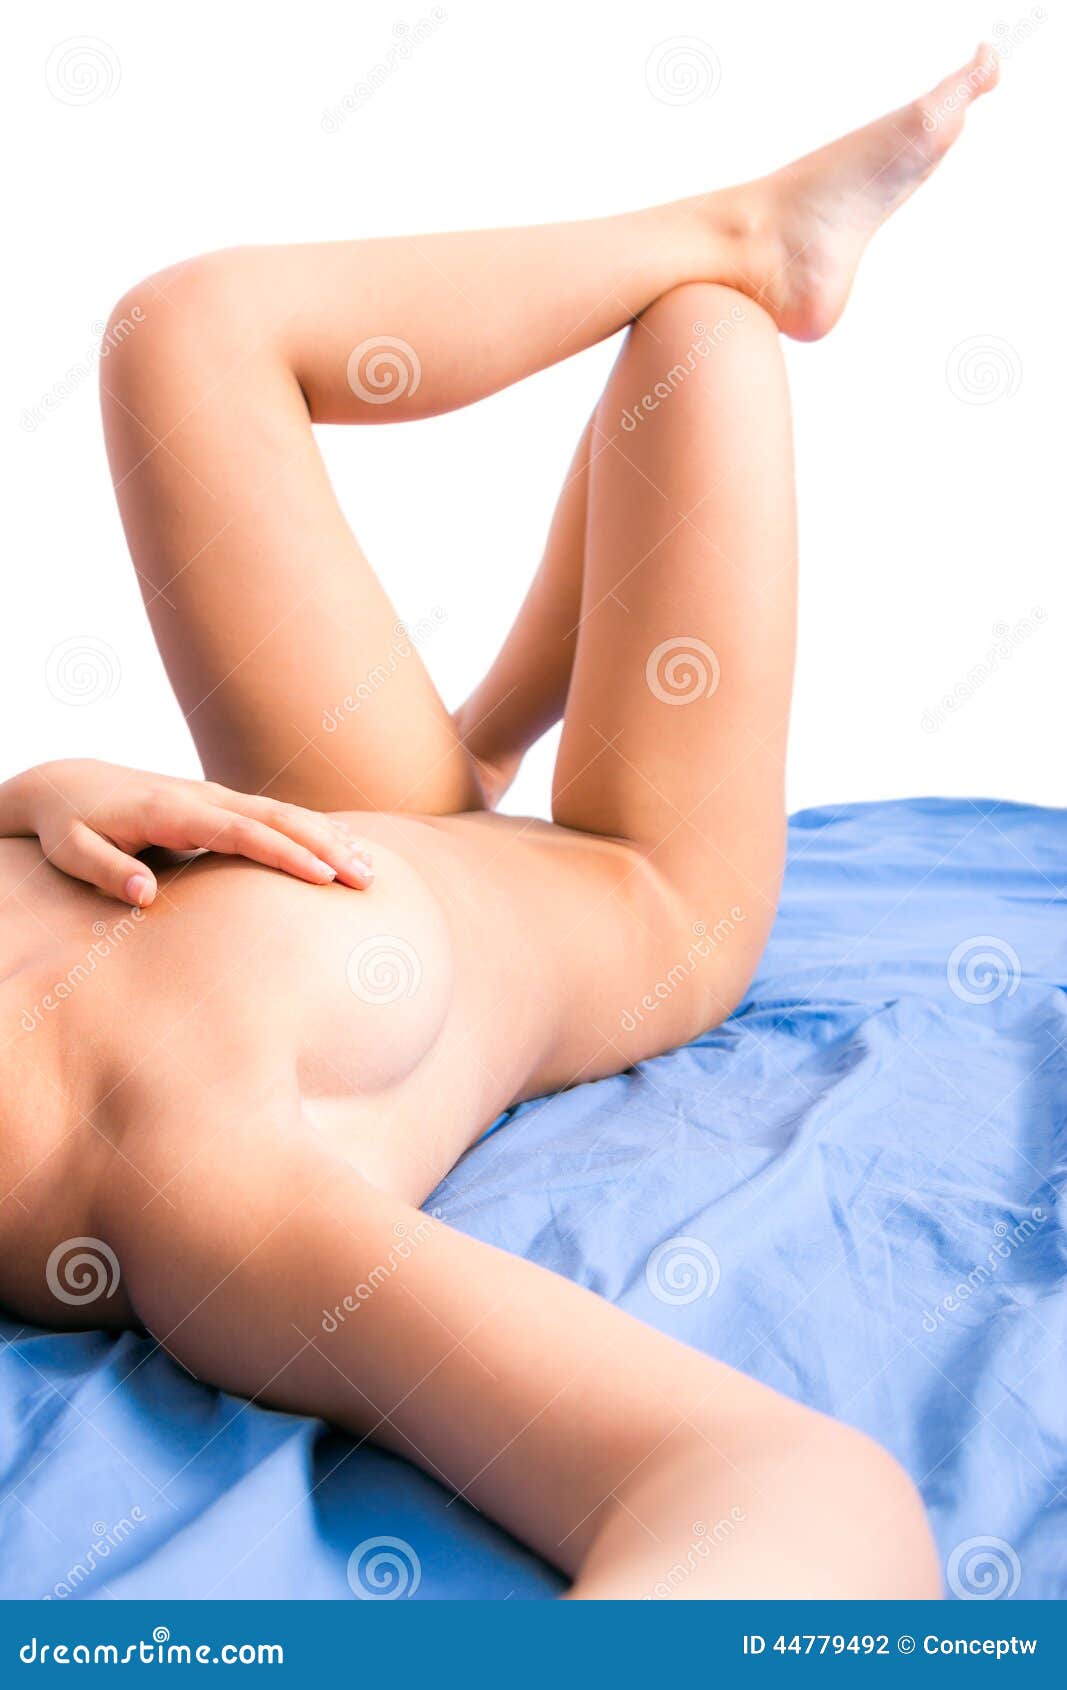 Selfie bed girl naked in